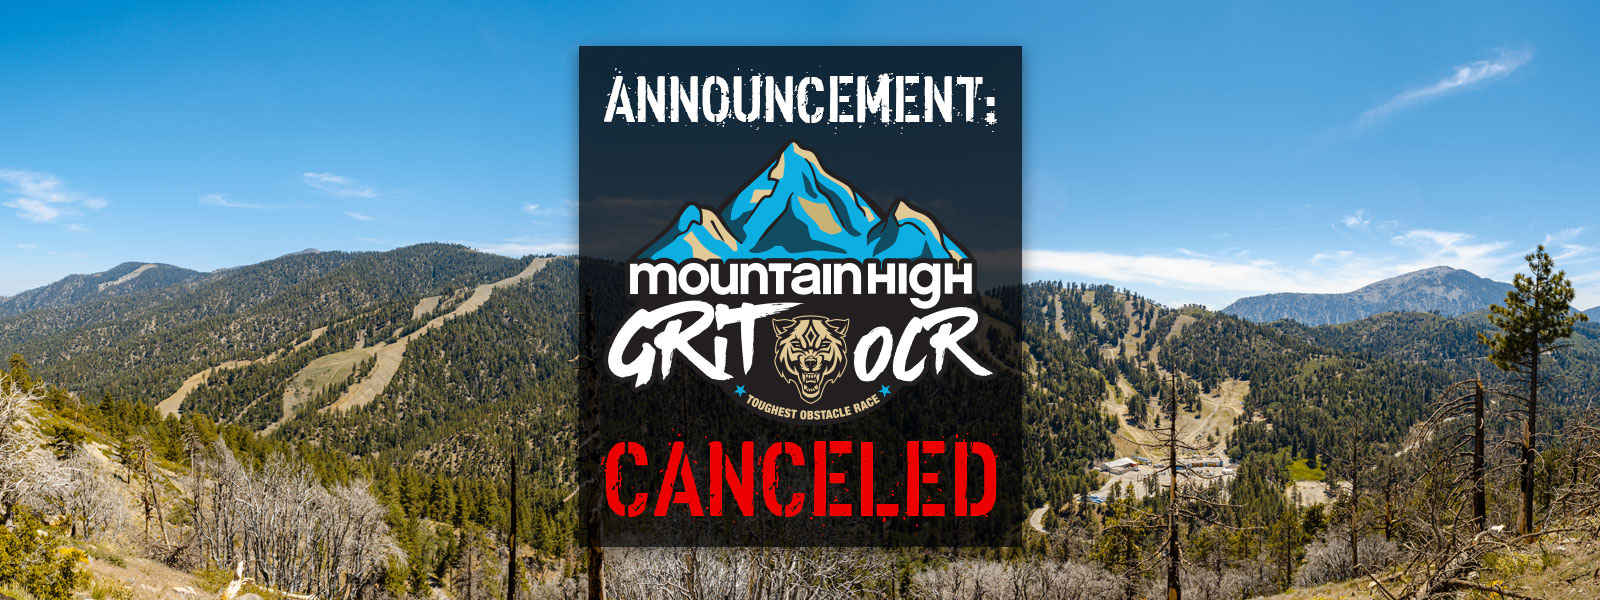 Grit OCR: Mt. High Canceled